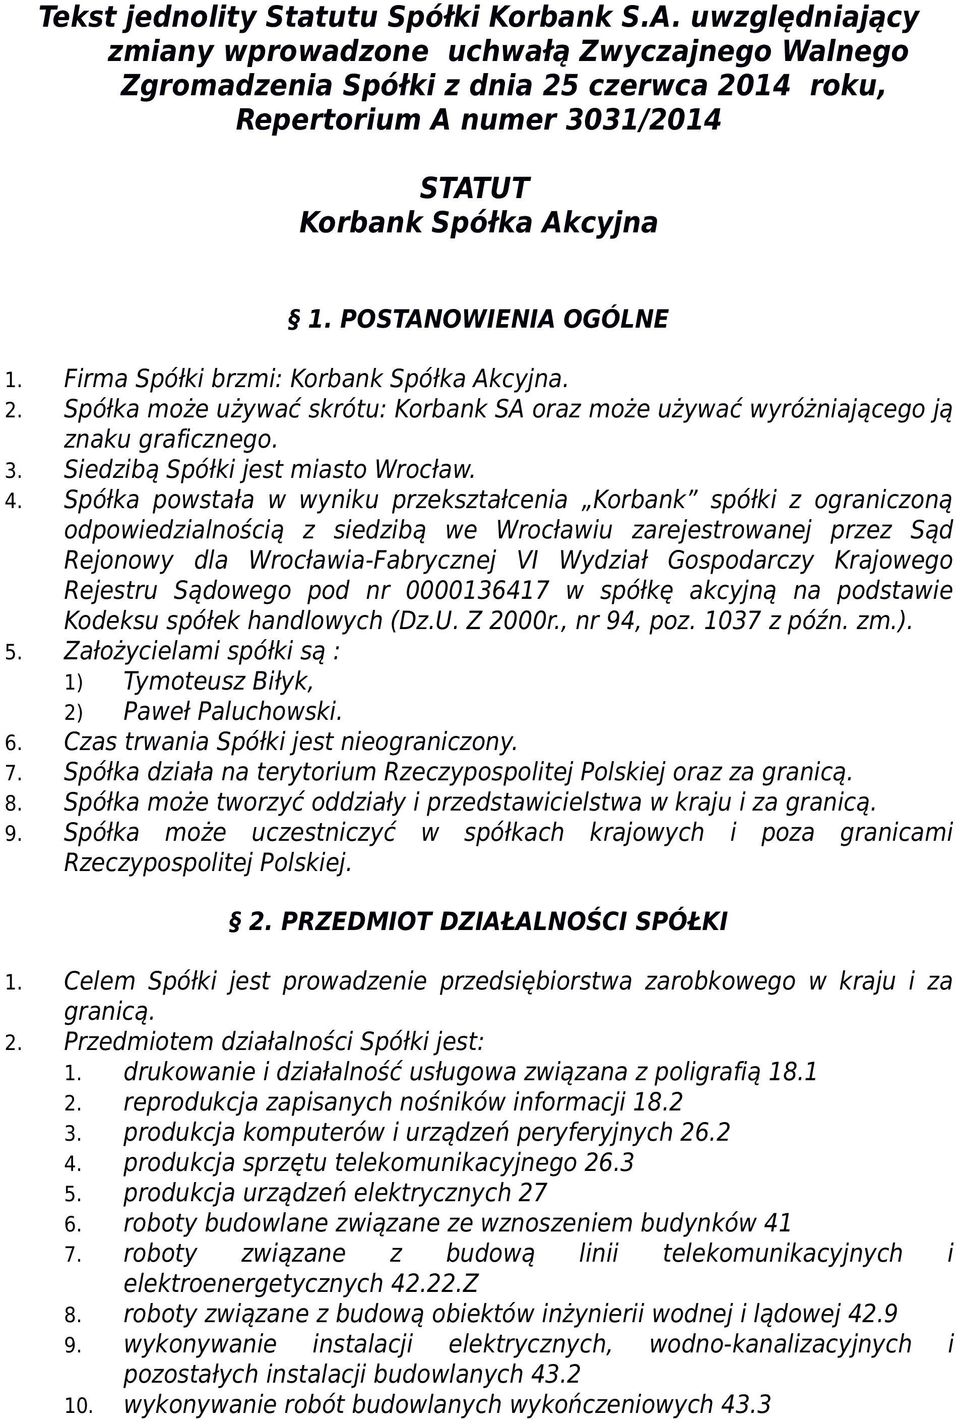 Firma Spółki brzmi: Korbank Spółka Akcyjna. 2. Spółka może używać skrótu: Korbank SA oraz może używać wyróżniającego ją znaku graficznego. 3. Siedzibą Spółki jest miasto Wrocław. 4.